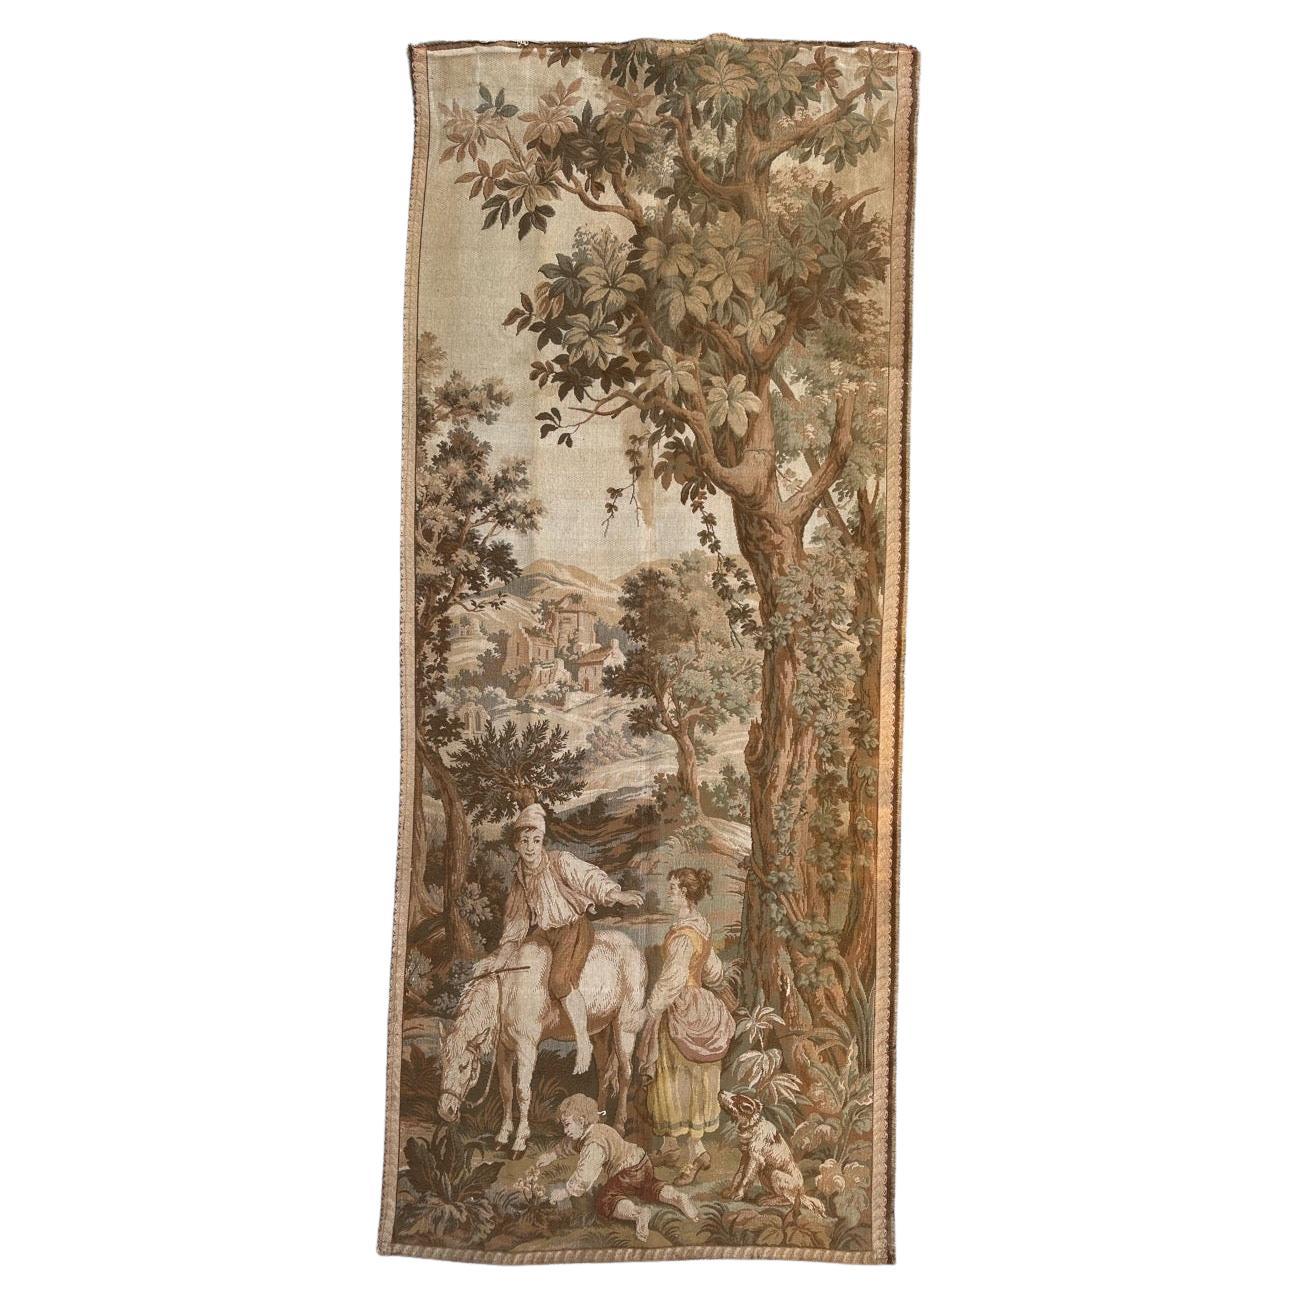 Bobyrugs hübscher antiker französischer Jacquard-Wandteppich im Aubusson-Stil